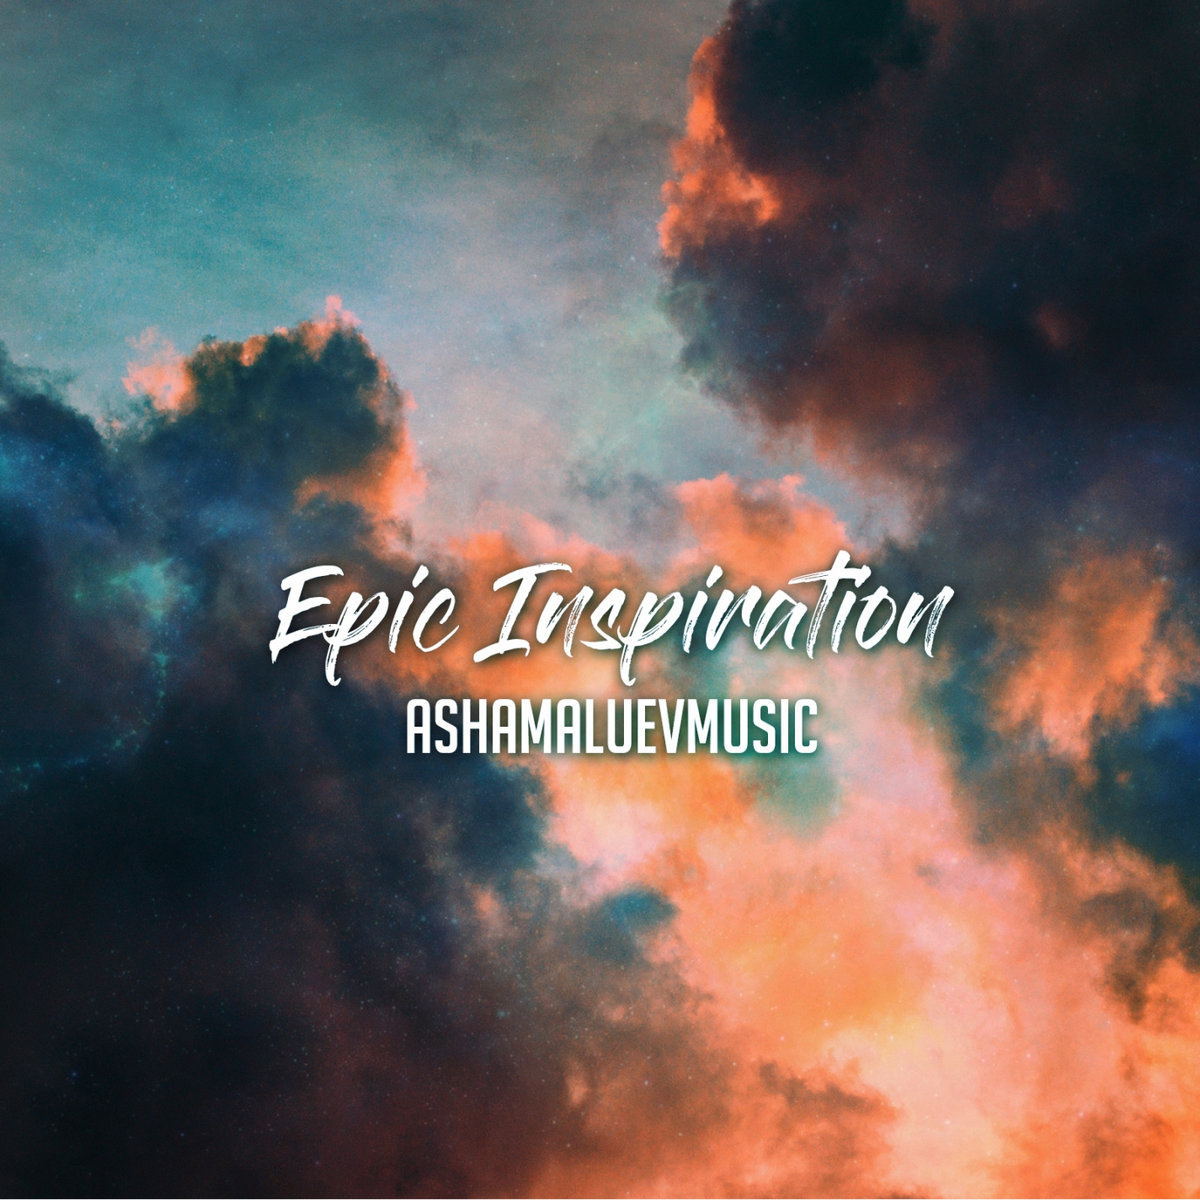 Epic Inspirational Music | AShamaluevMusic